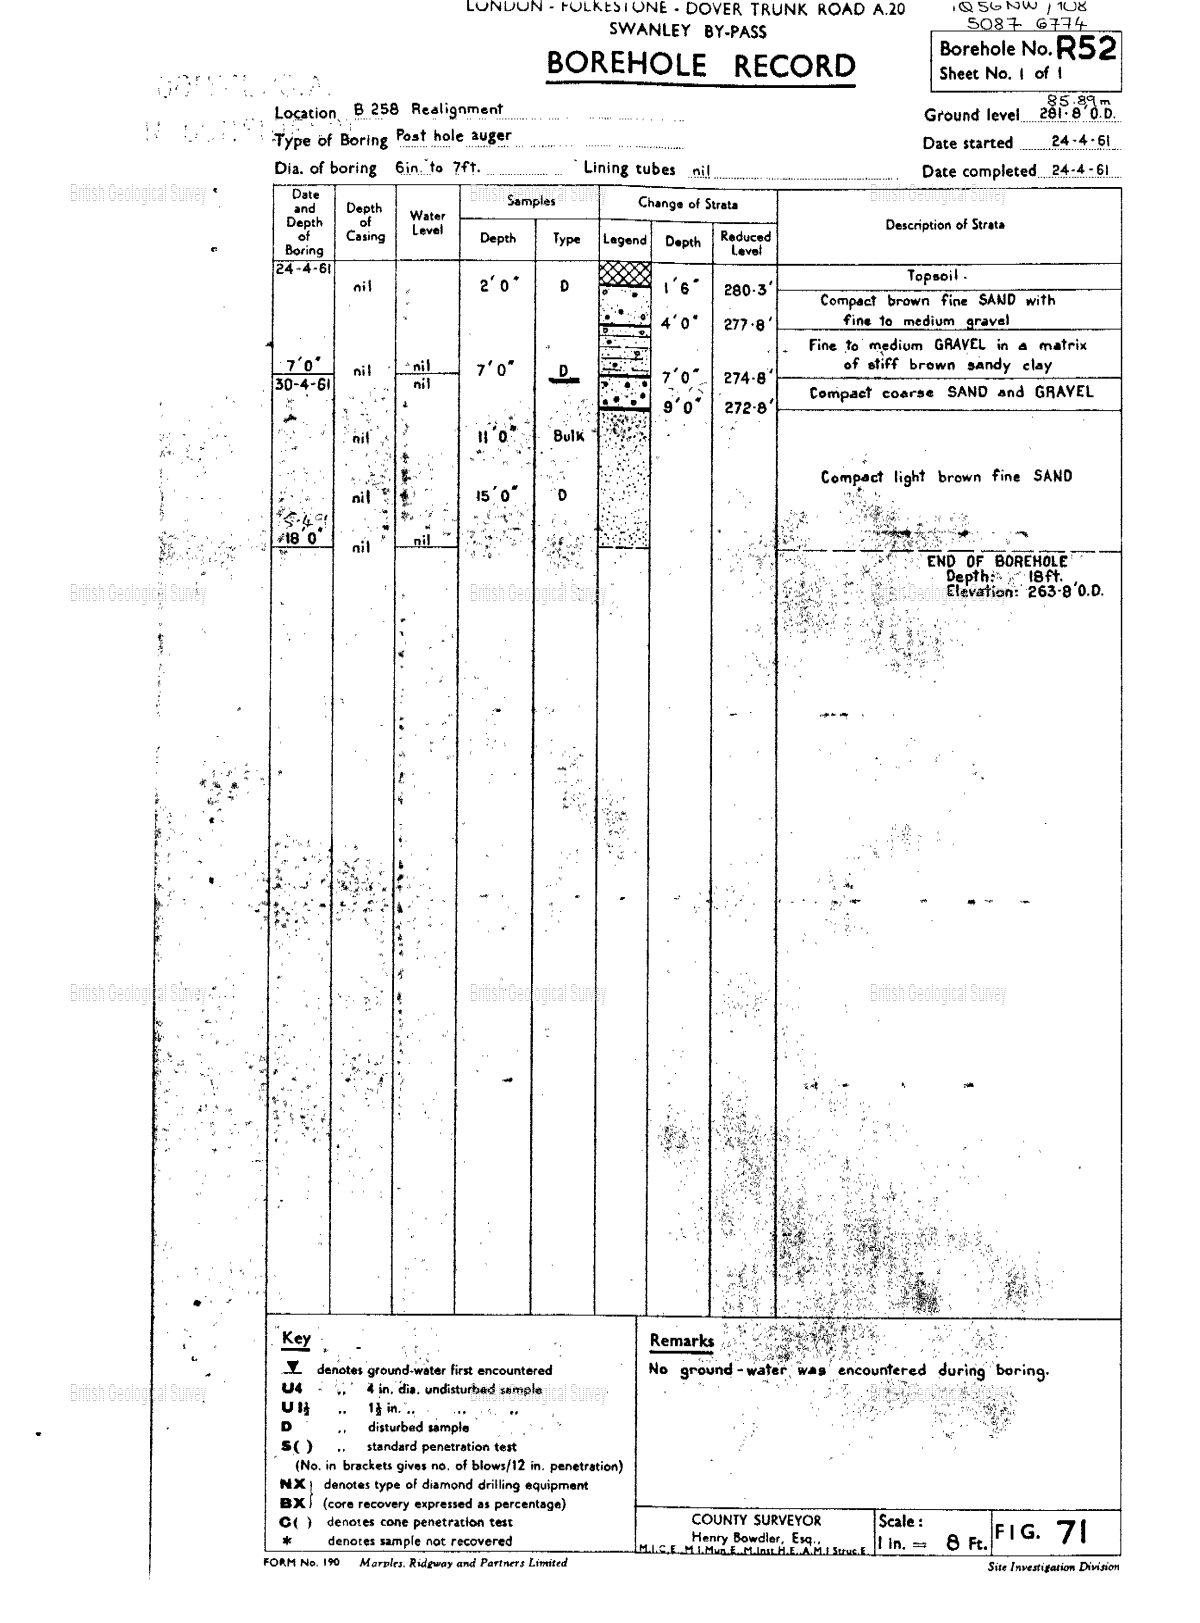 Scanned image of the borehole log